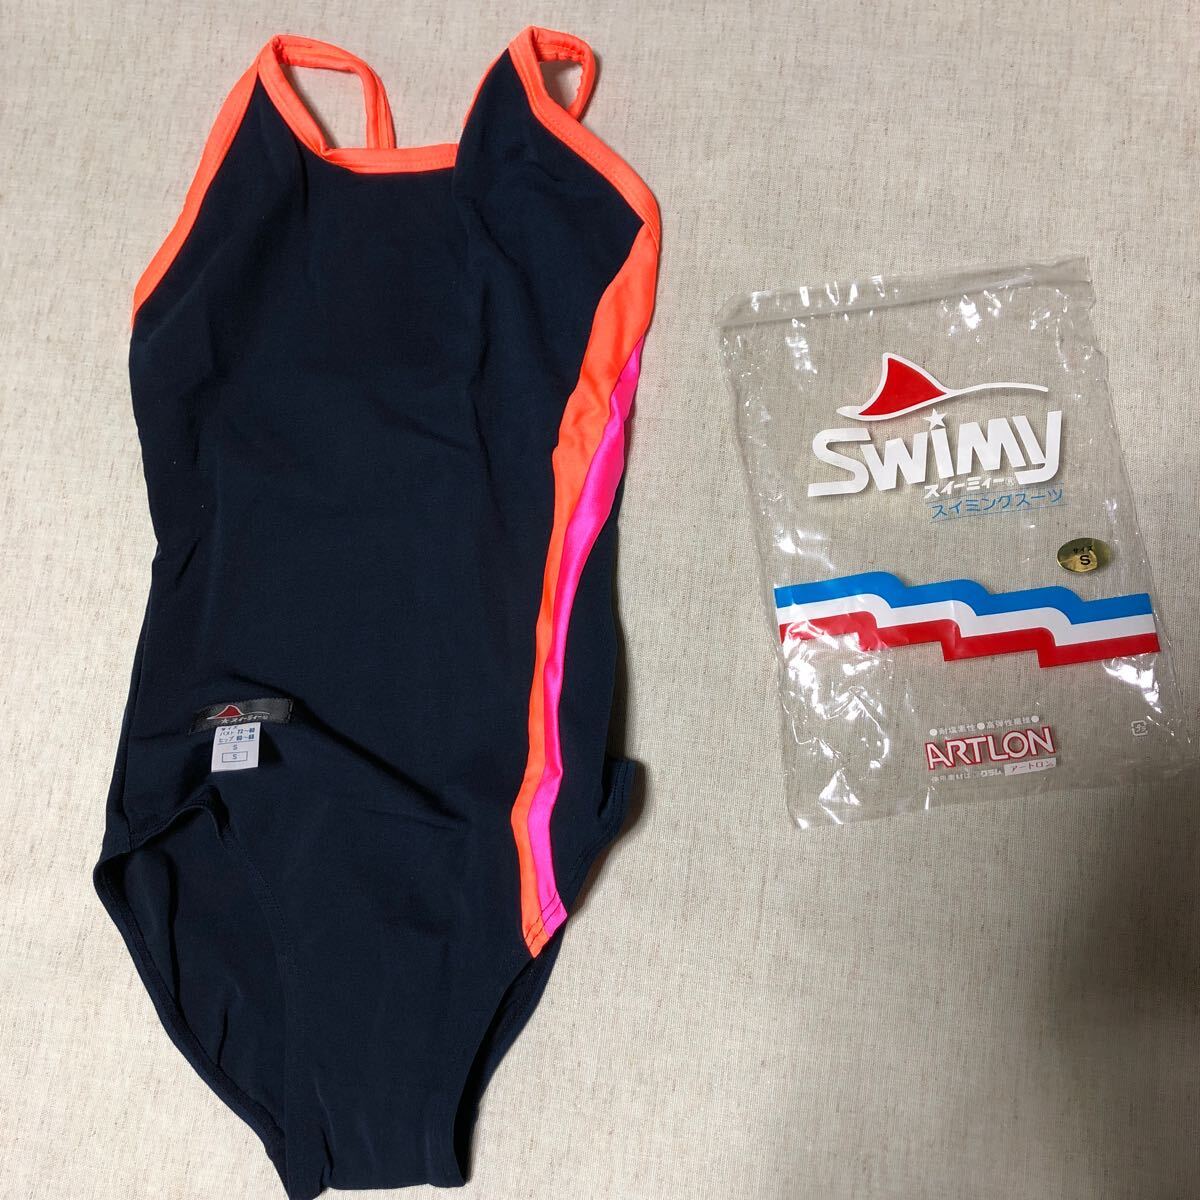 swimy  スイーミィ 女子スクール水着 アートロン スイミングスーツ サイズ Sの画像2